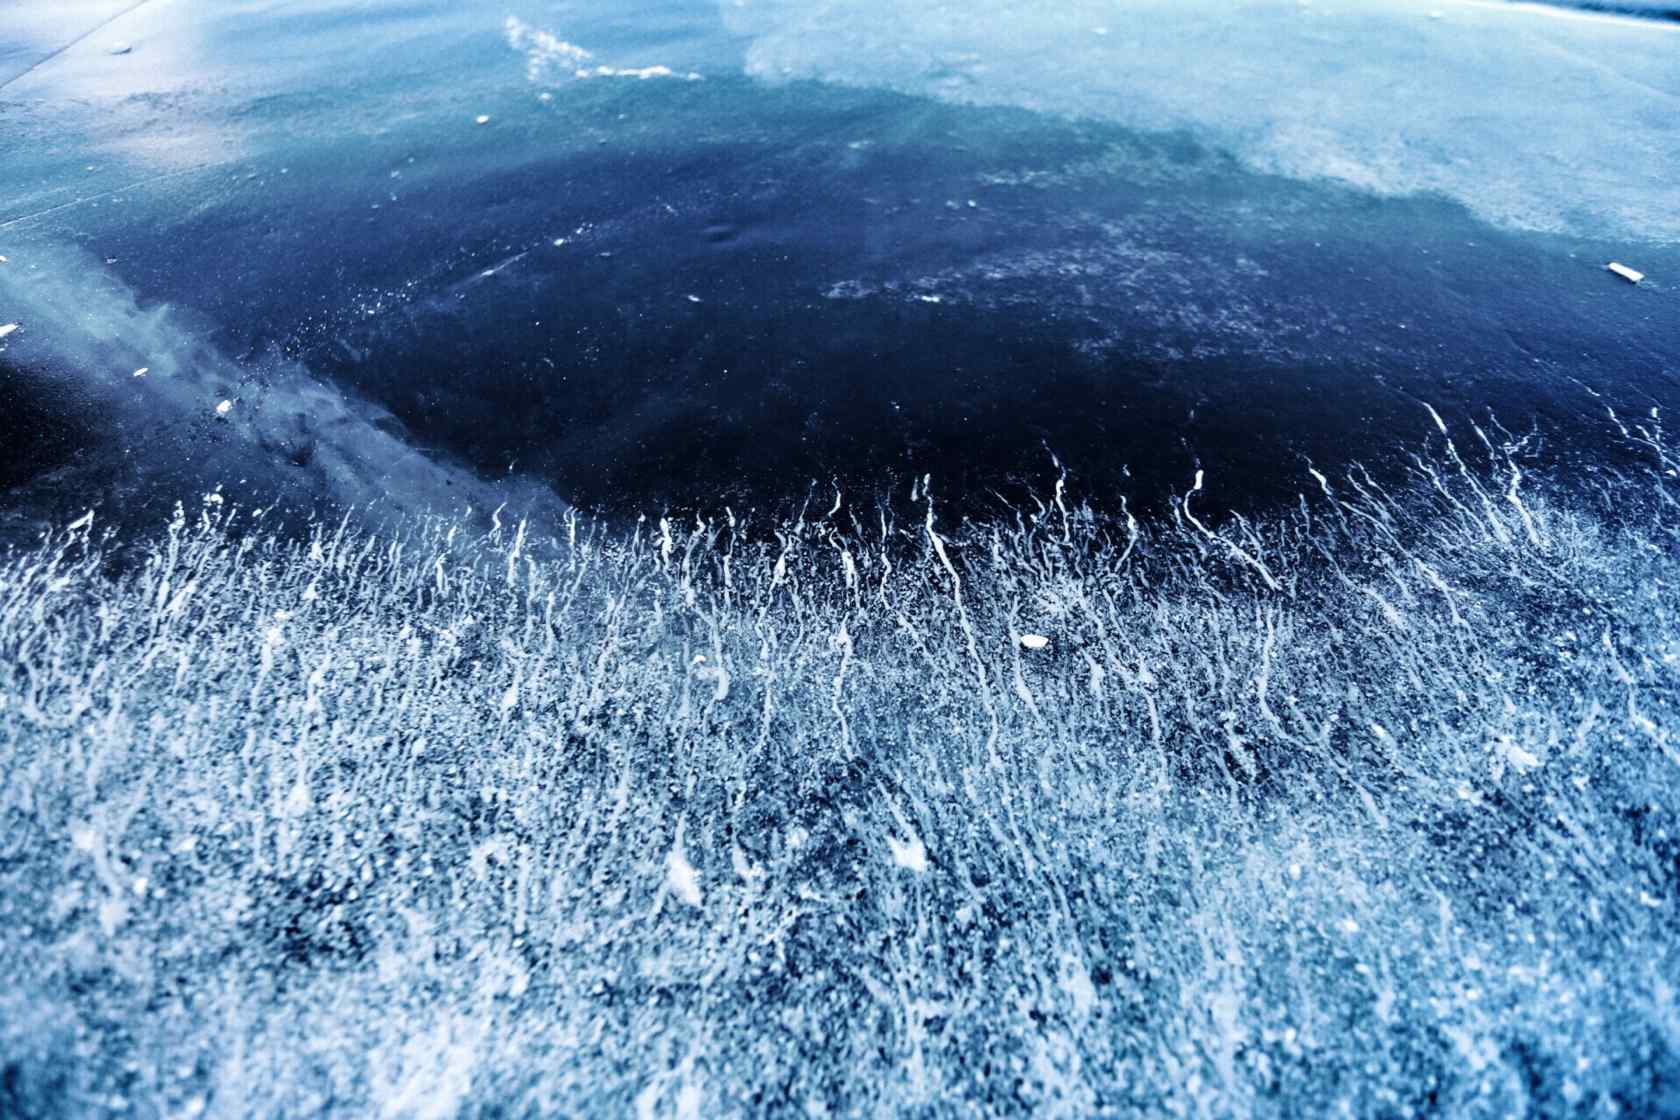 贝加尔湖冬季特色冰凌风景图片高清桌面壁纸